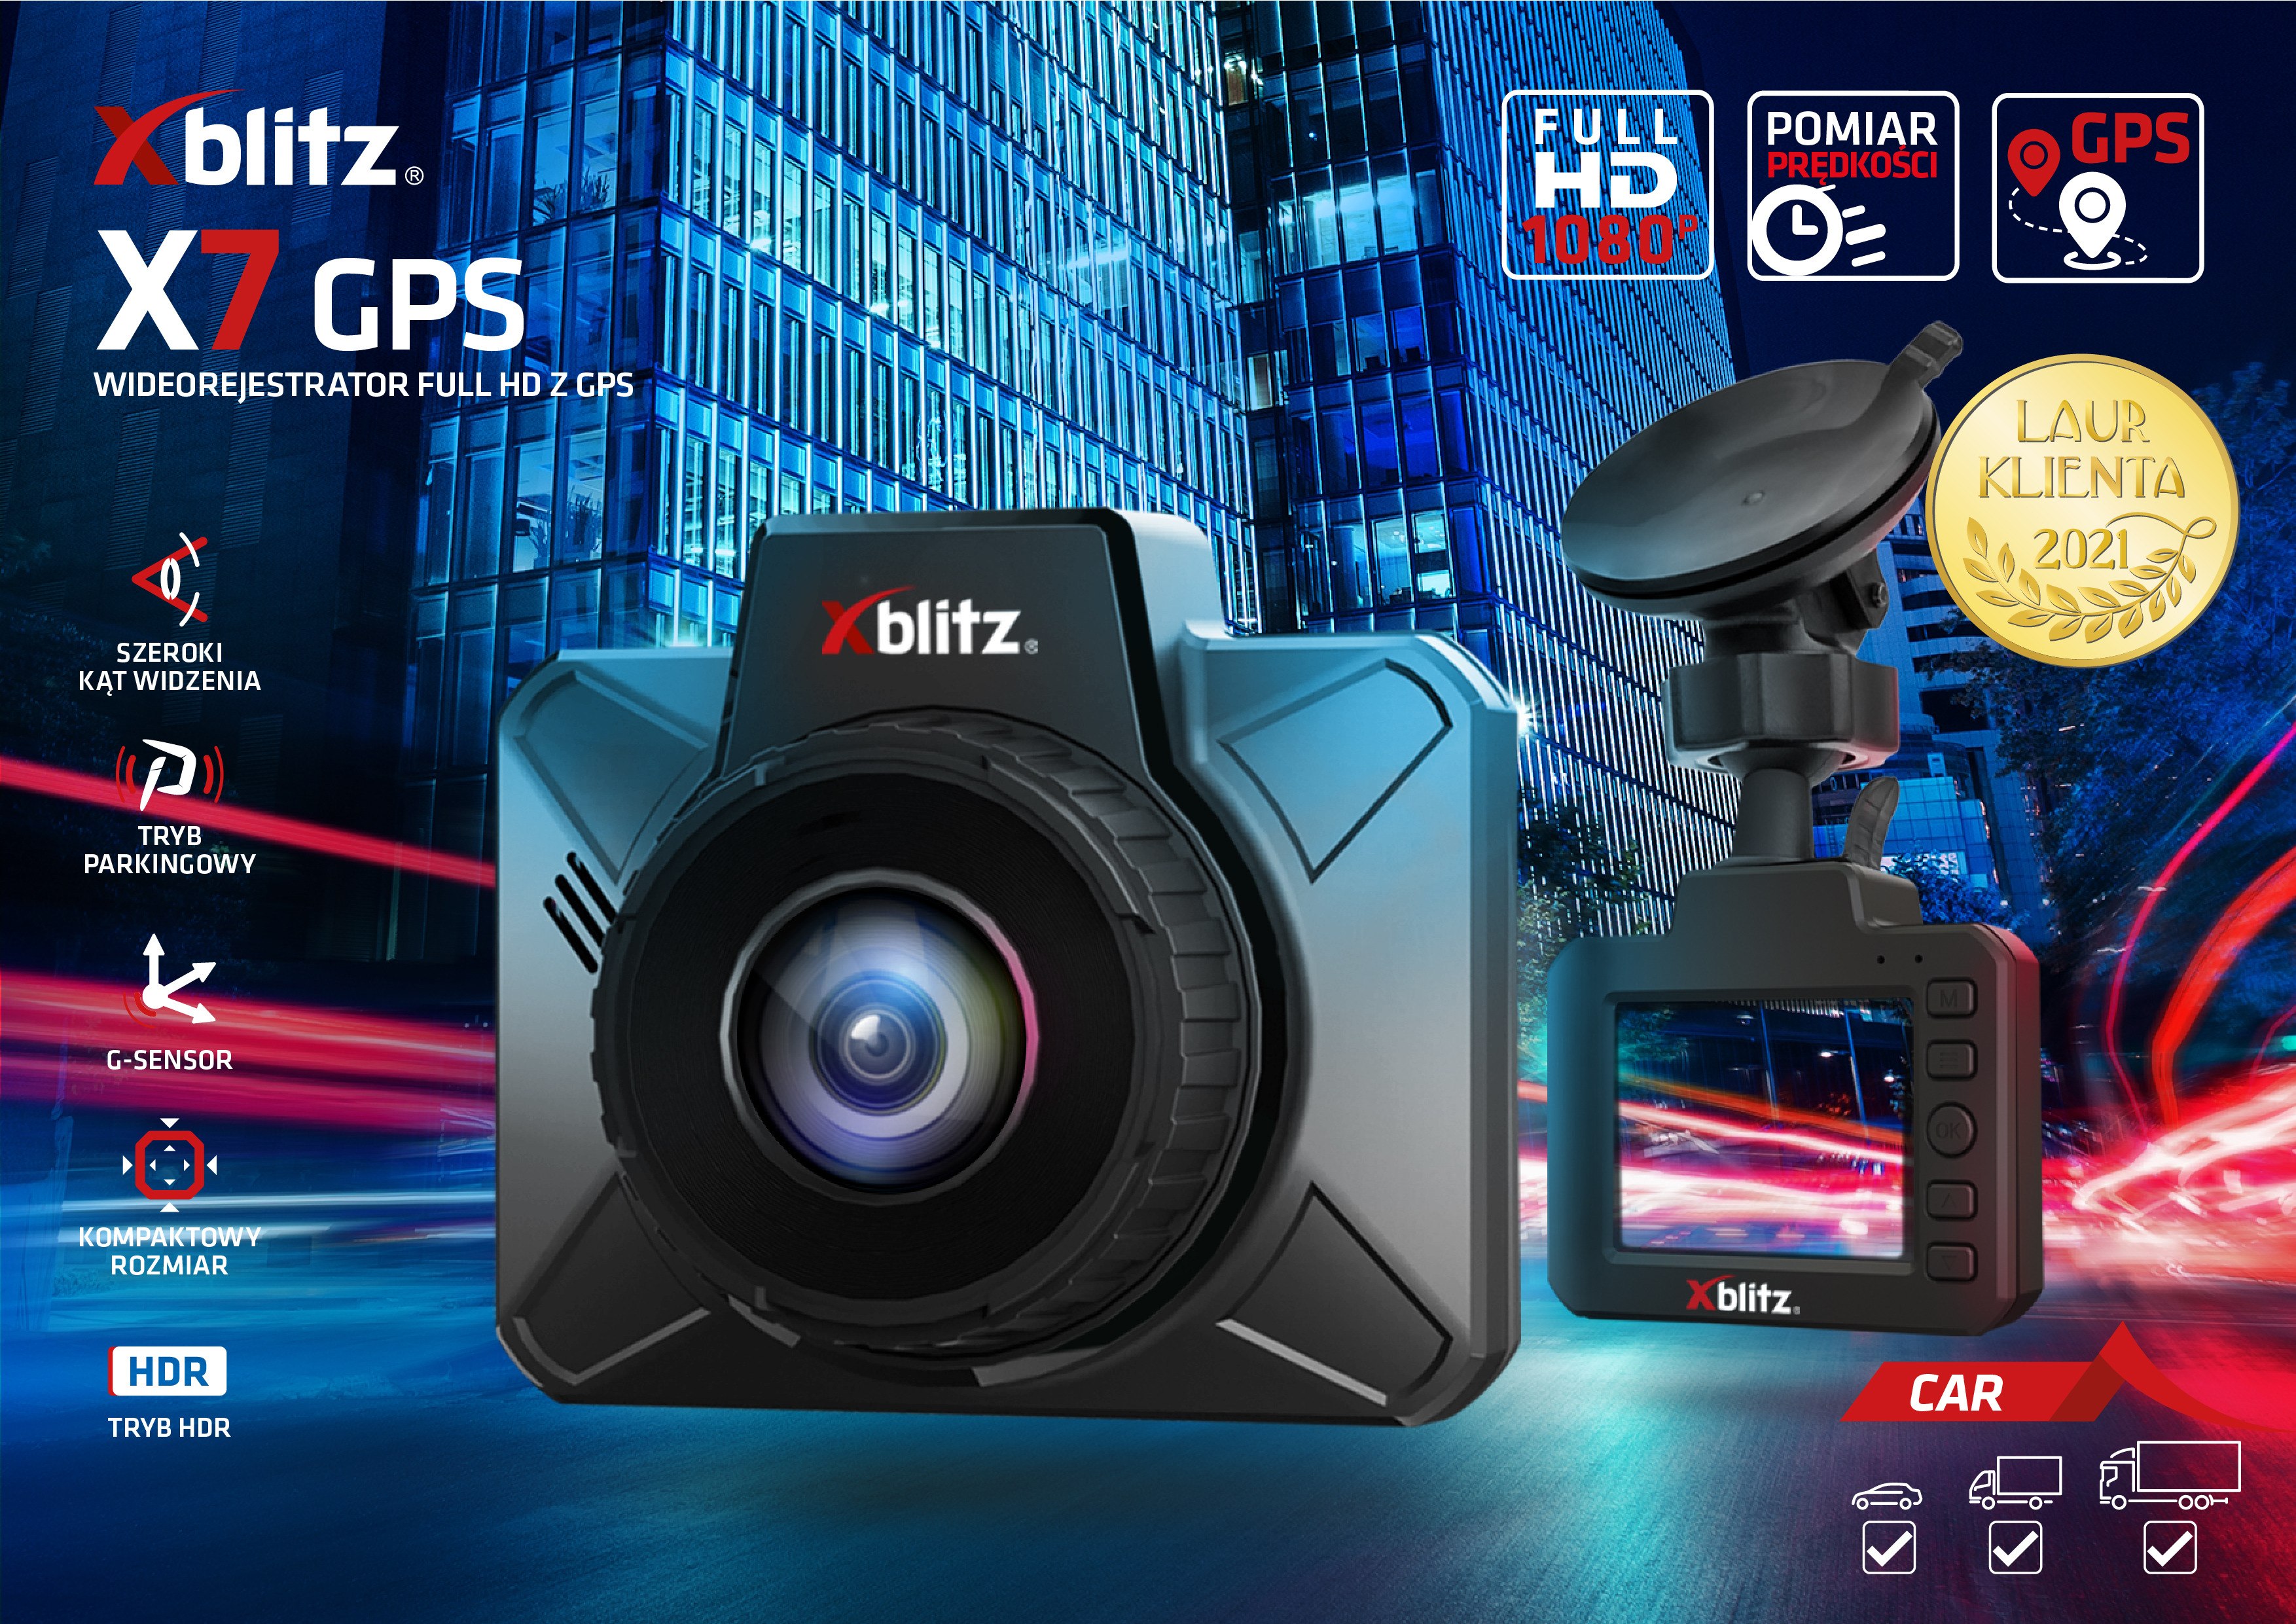 X7 GPS - WIDEOREJESTRATOR FULL HD Z GPS